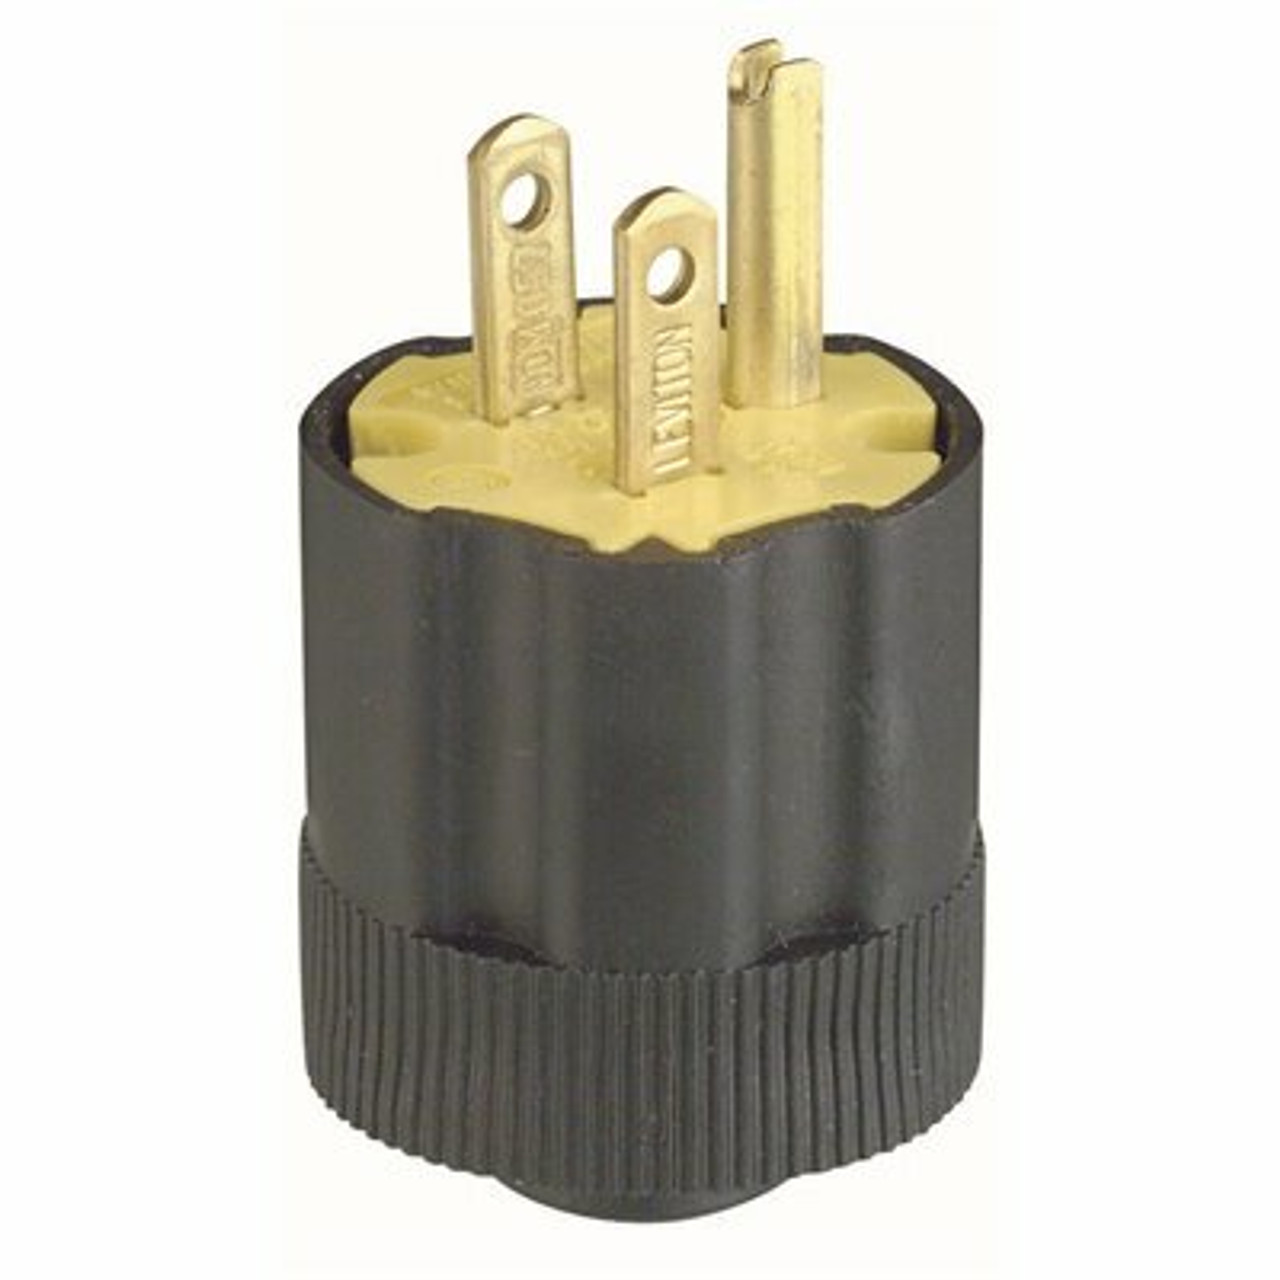 Leviton 3-Wire Rubber Plug, Black/Yellow